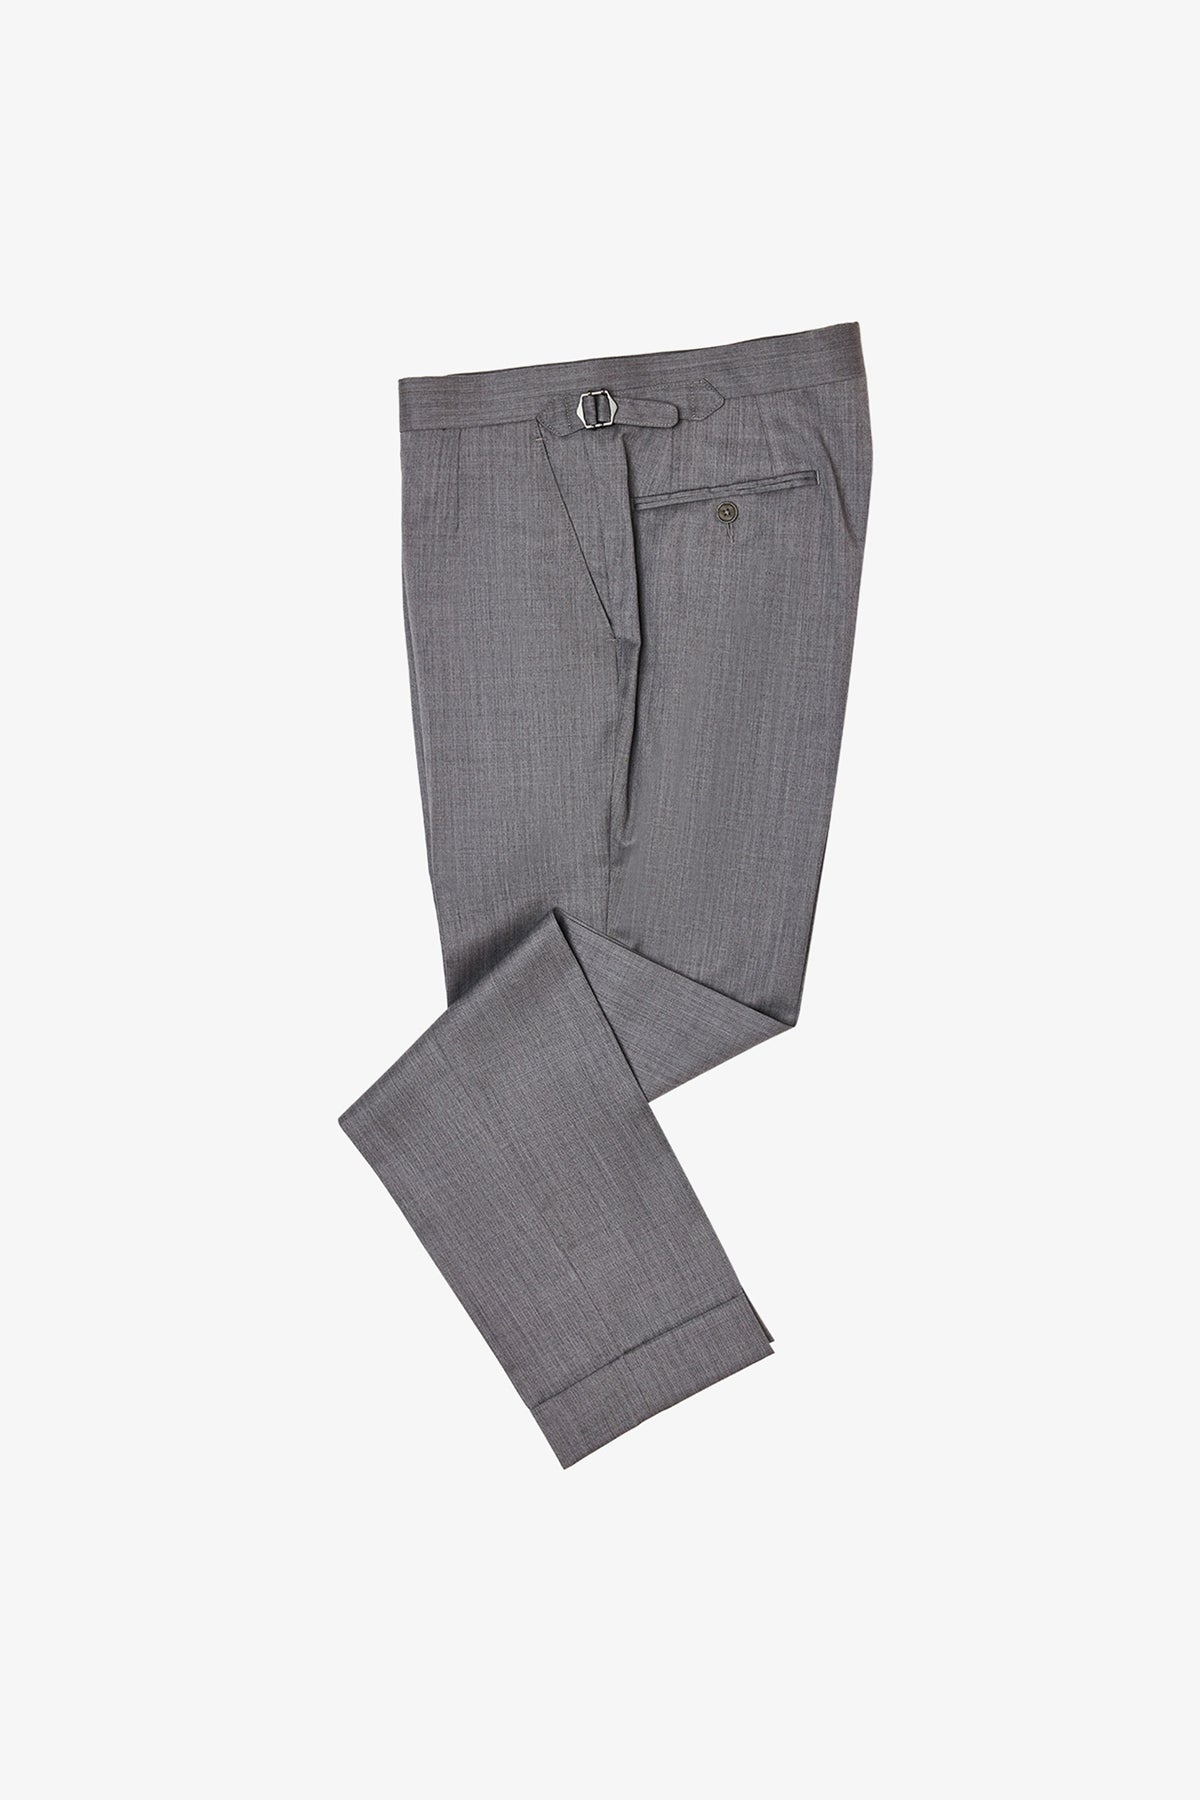 Kit - Light Grey Trouser